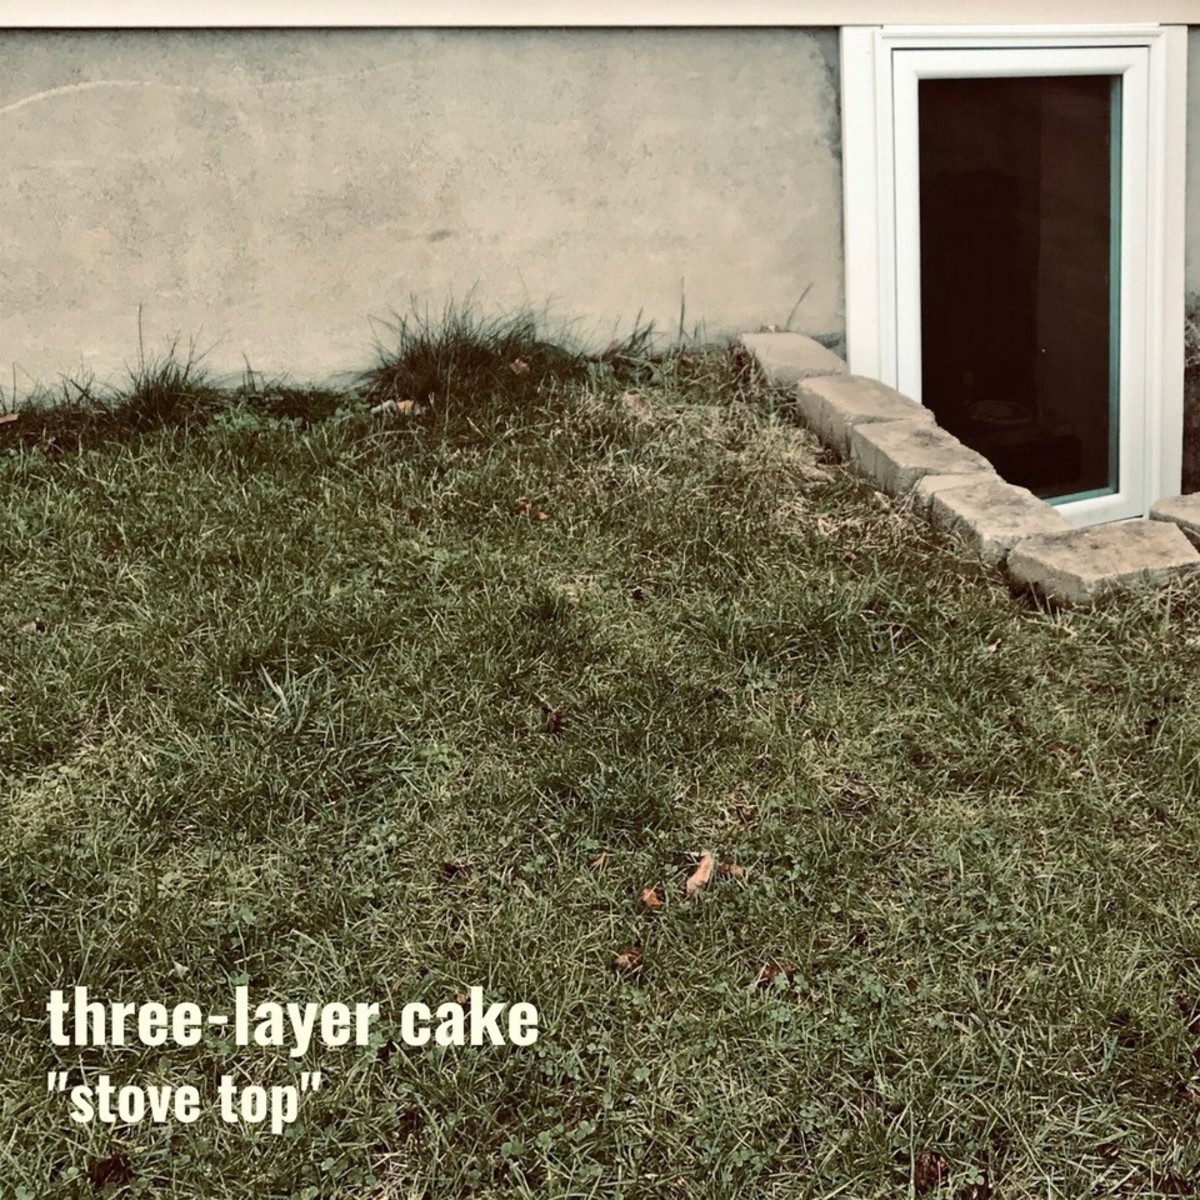 three-layer cake